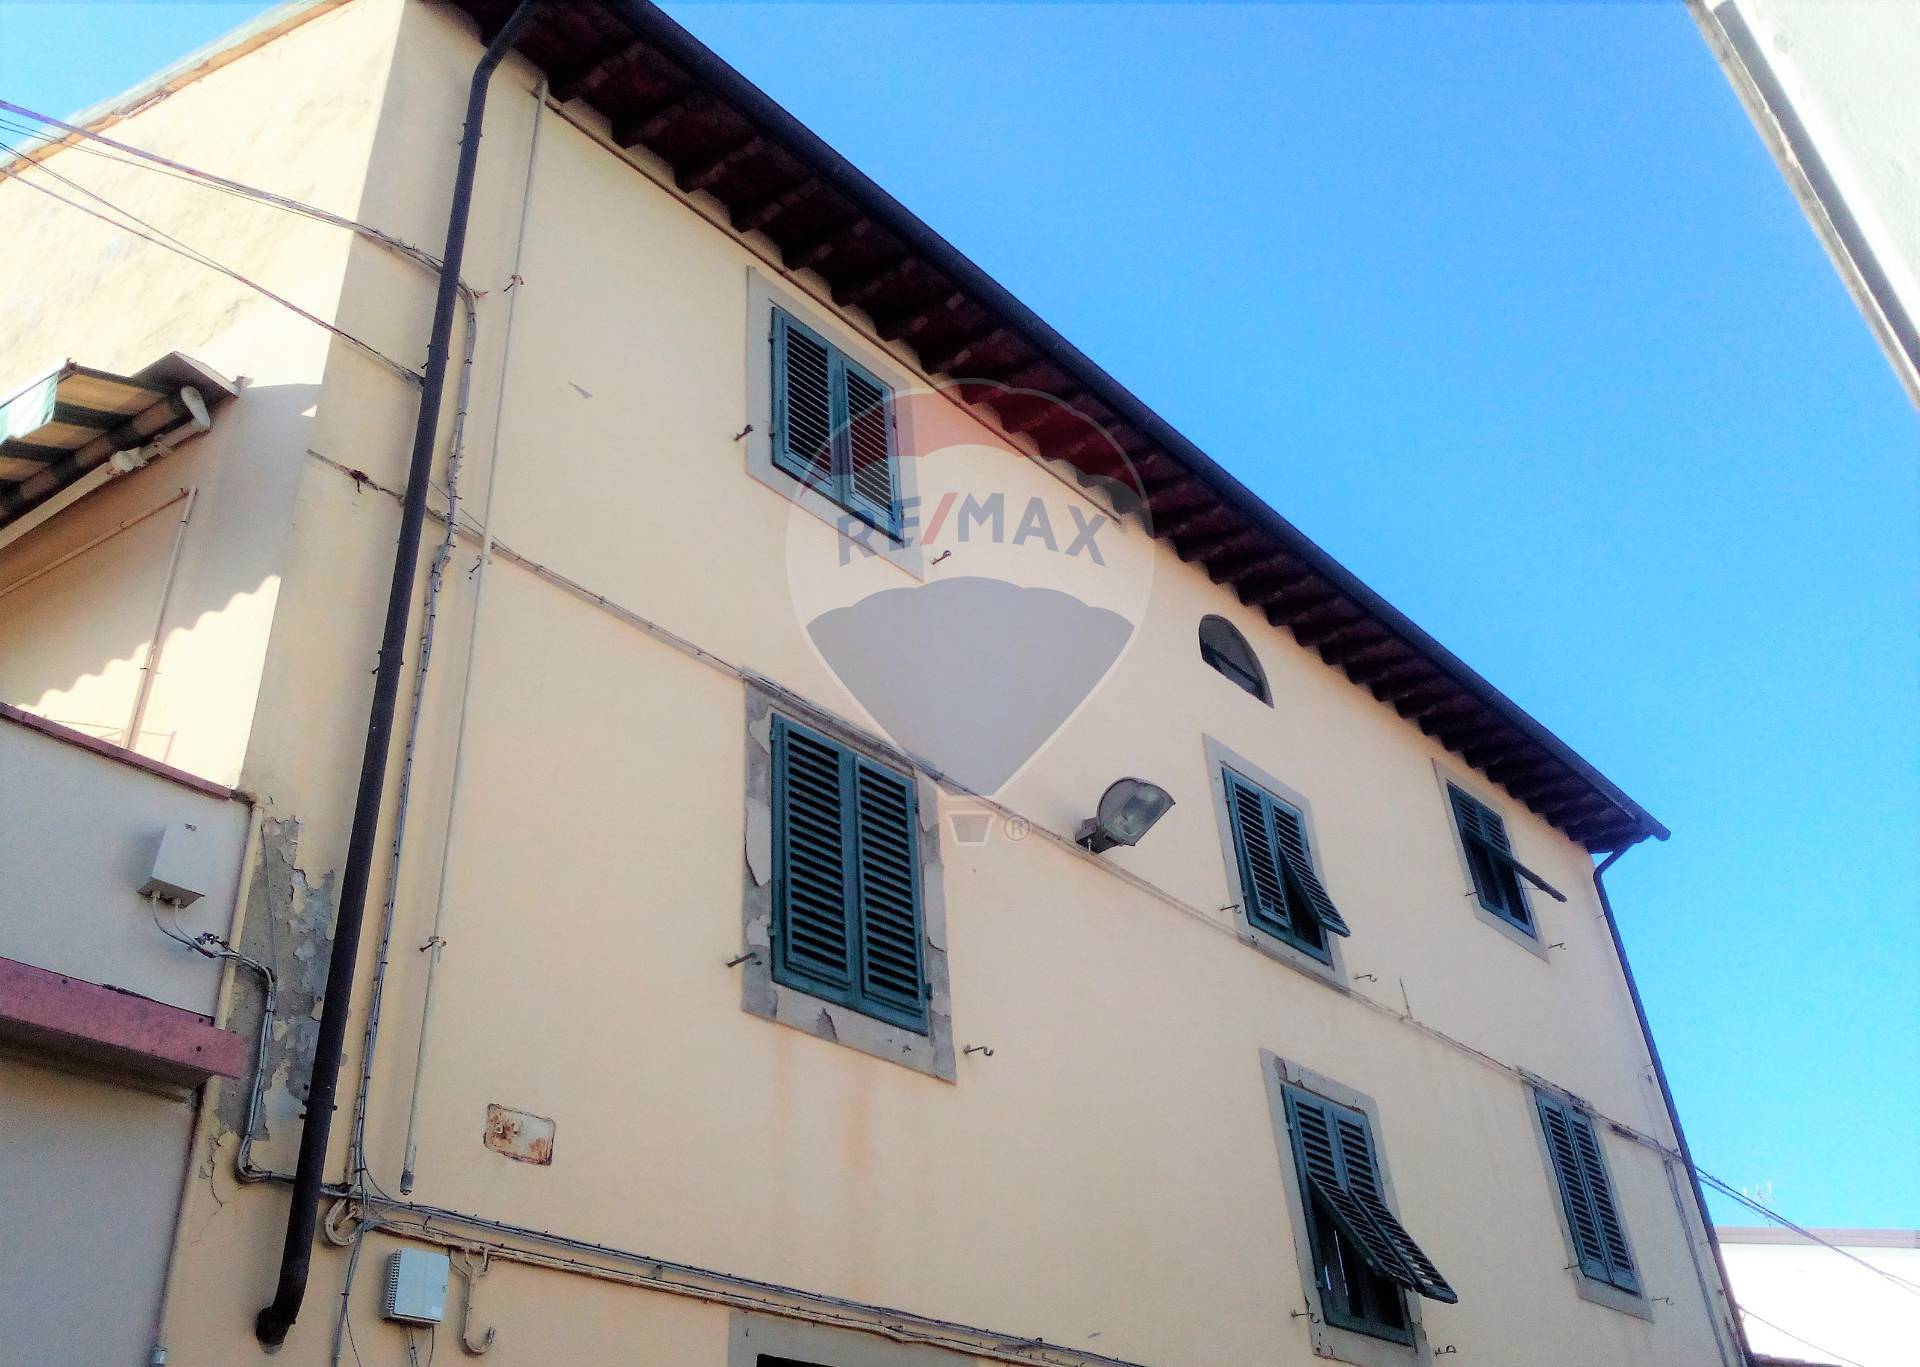 Appartamento in vendita a Empoli, 4 locali, zona Località: Centro, prezzo € 70.000 | PortaleAgenzieImmobiliari.it